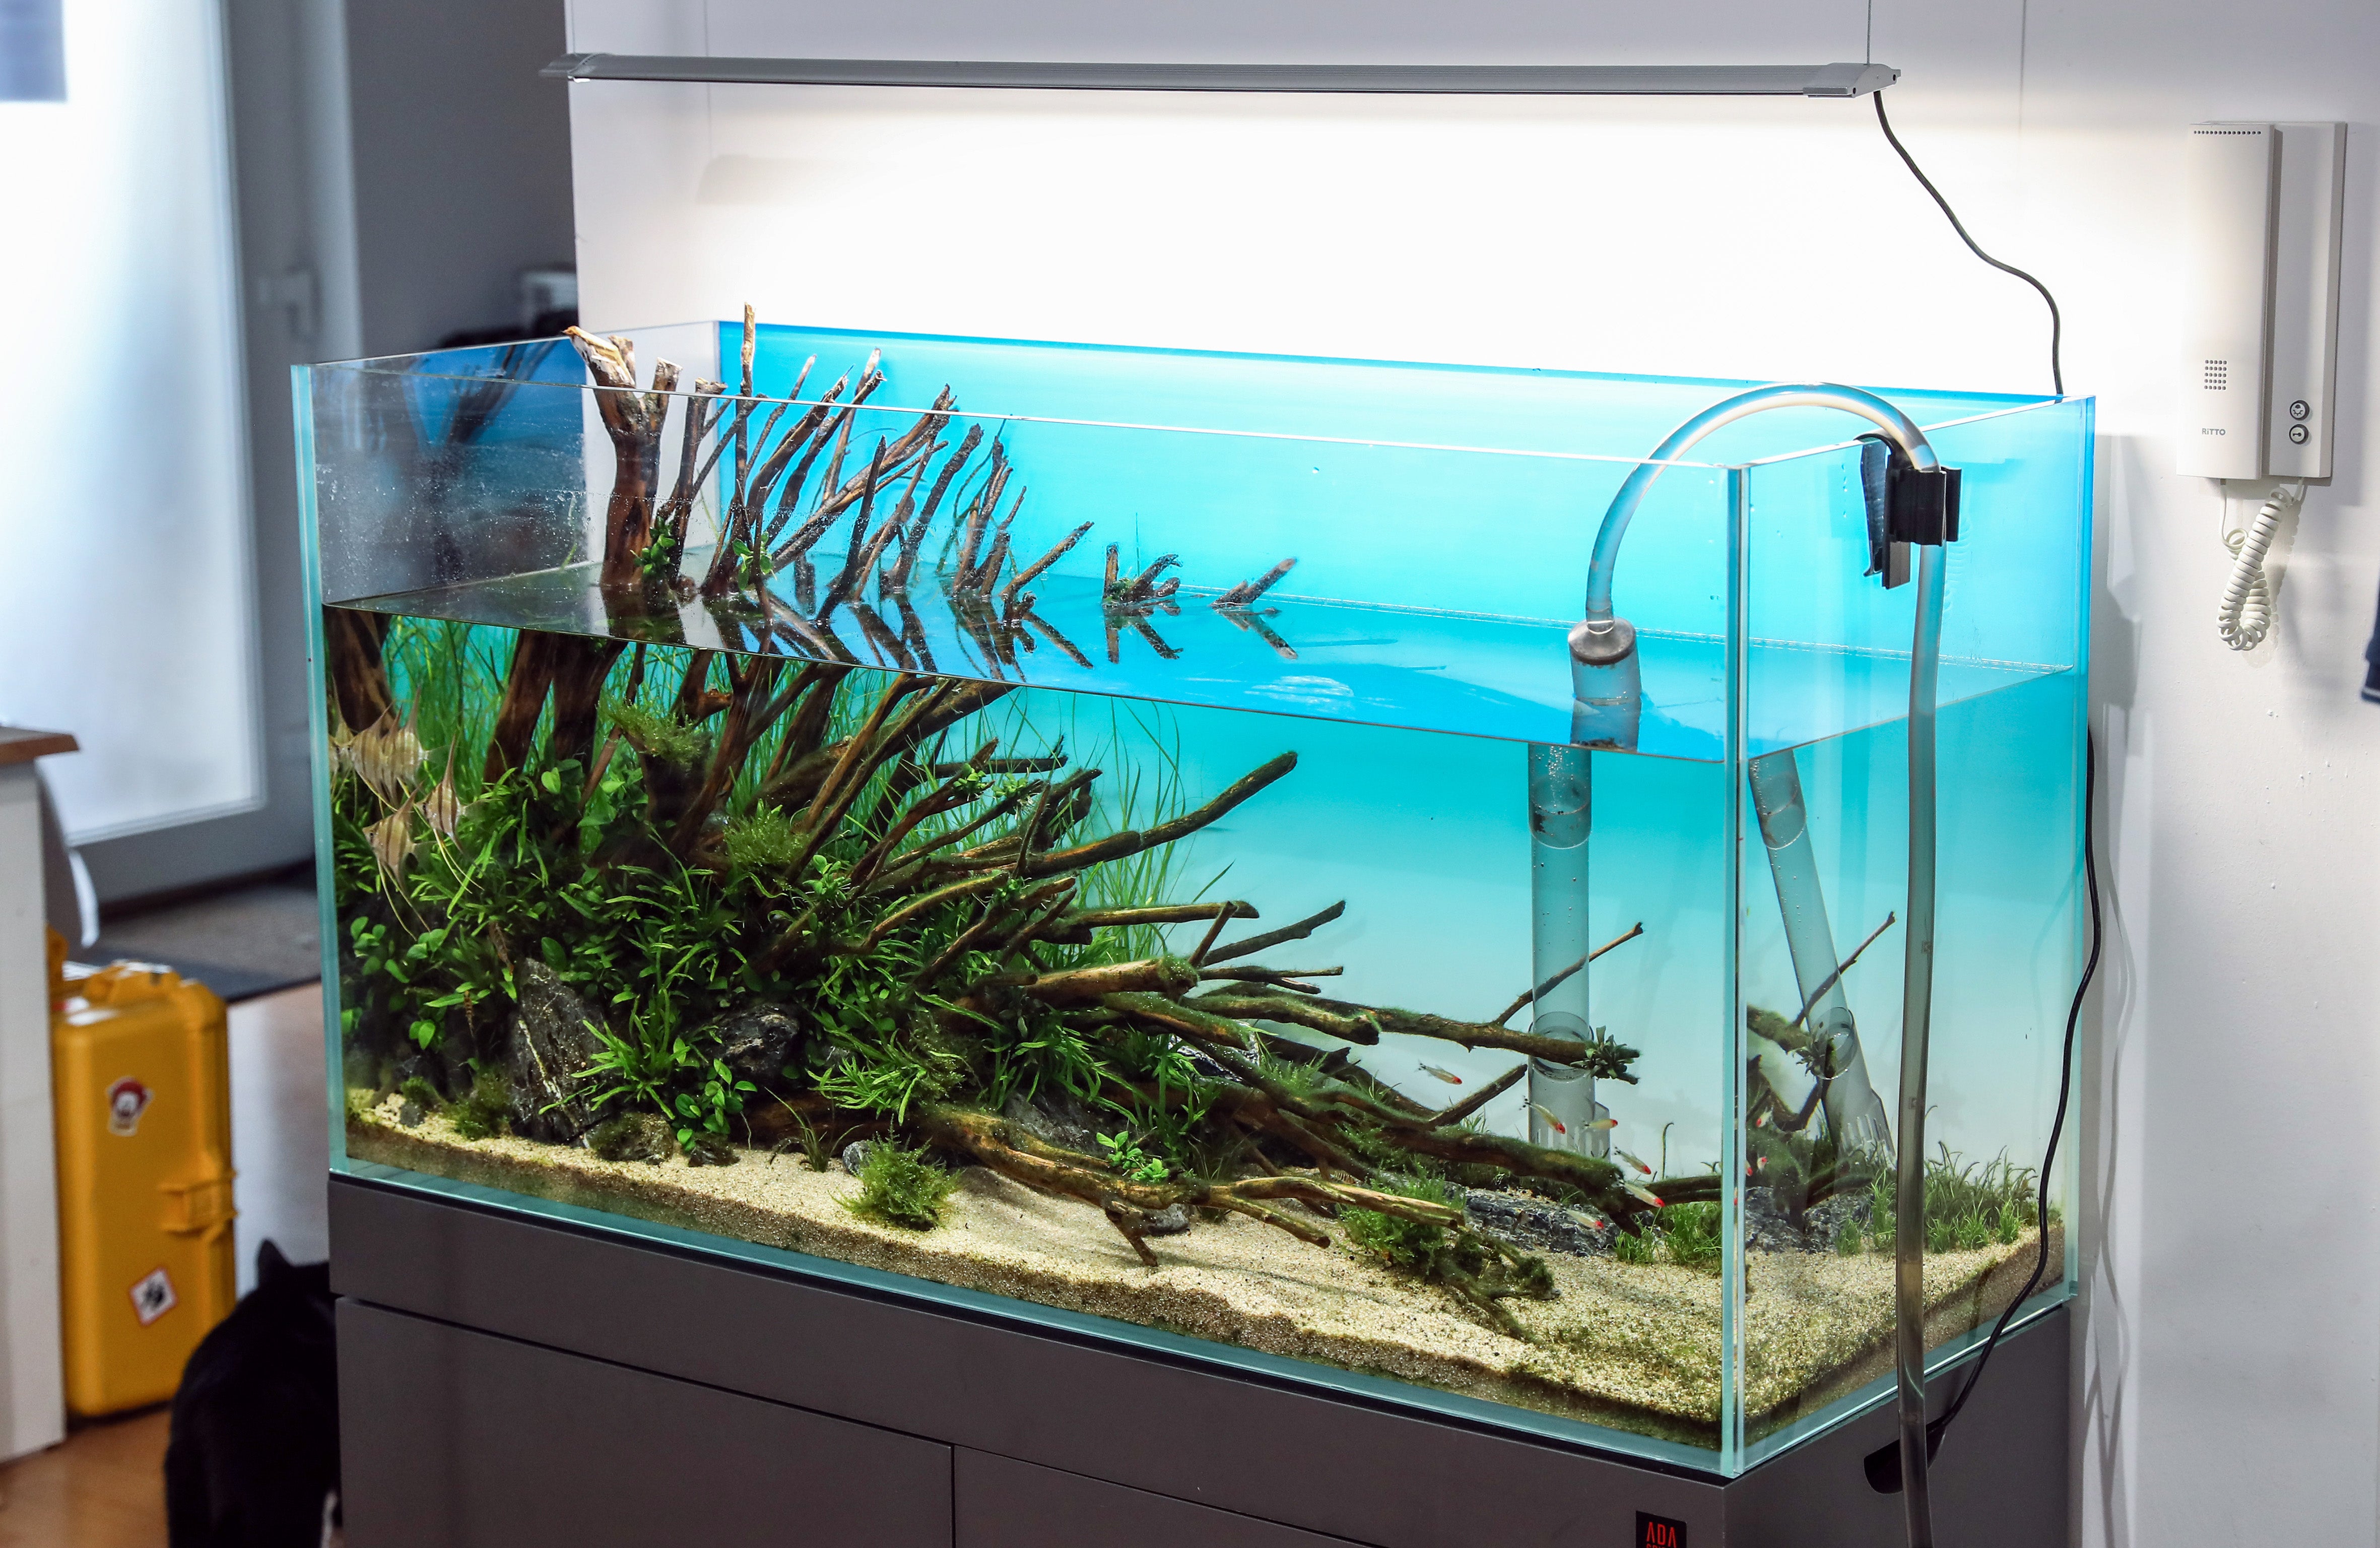 Aquarium-Luftsprudler, Farbwechsel-Luftblase unter Wasser